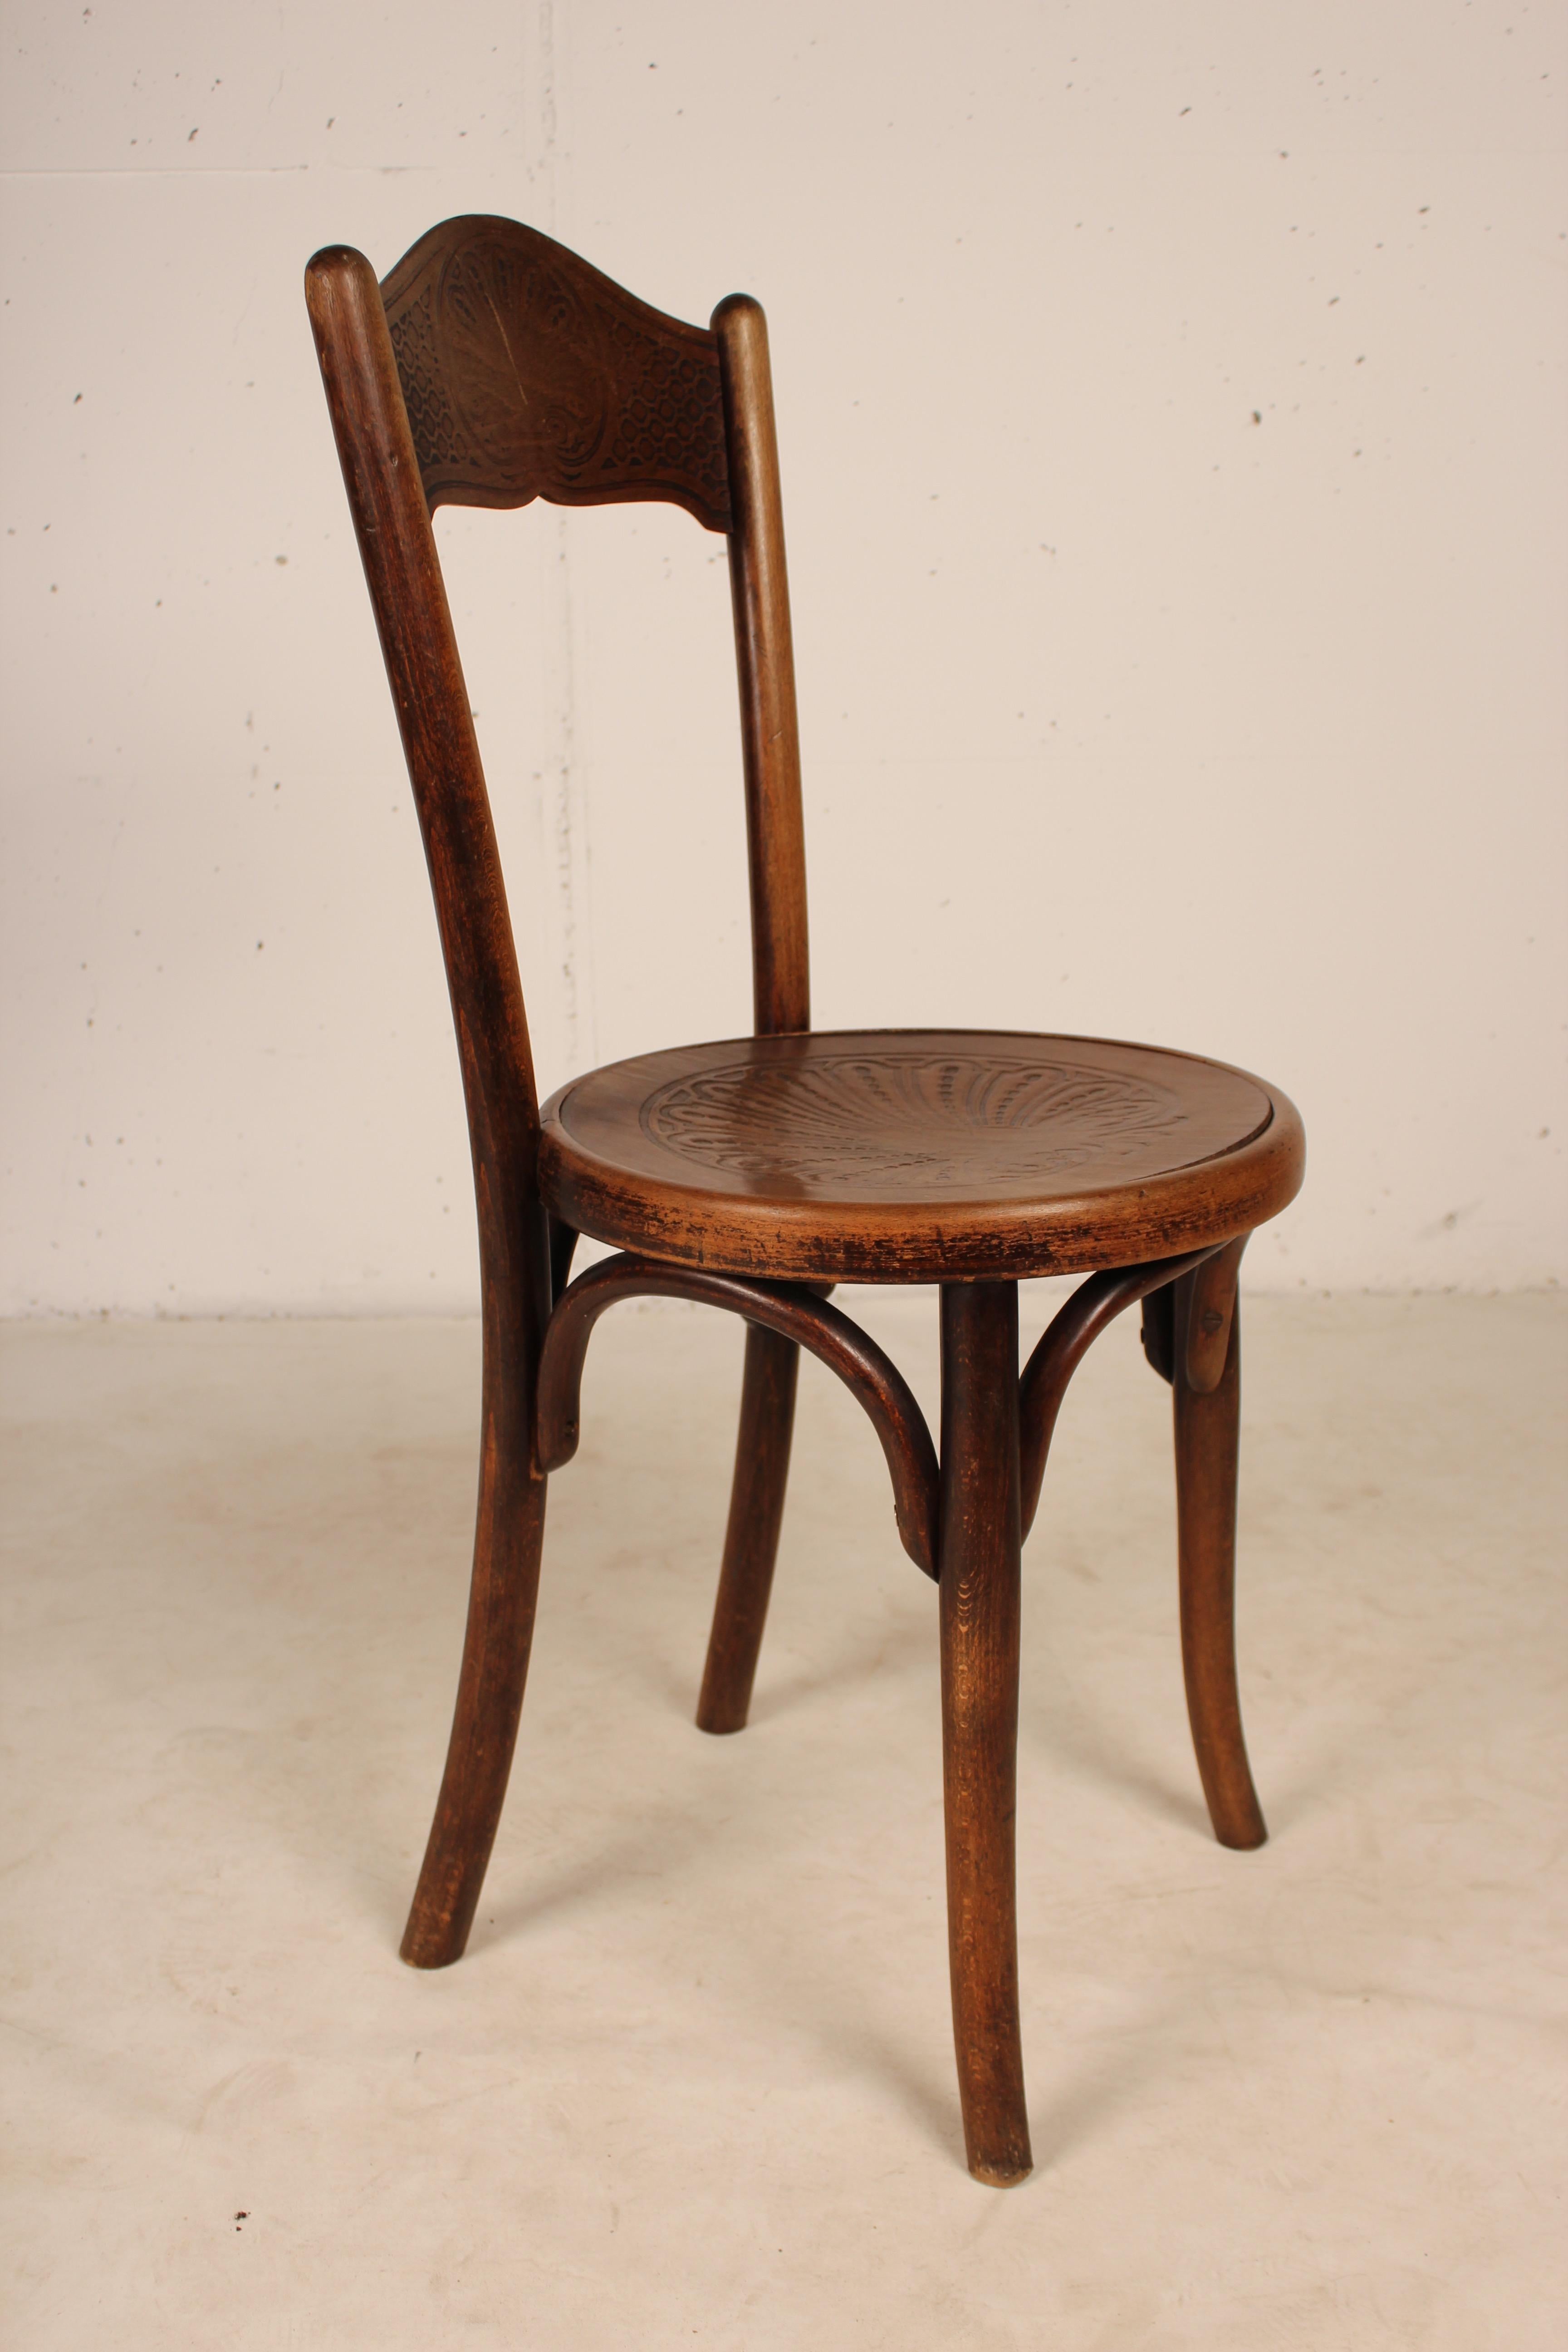 Exceptionnel et rare ensemble de 6 chaises de bistrot de Jacob & Josef Kohn de la fin du 19ème siècle. Chaises en bois courbé dont l'assise et le dossier sont sculptés de magnifiques motifs. Toutes les chaises sont estampillées sous les sièges.